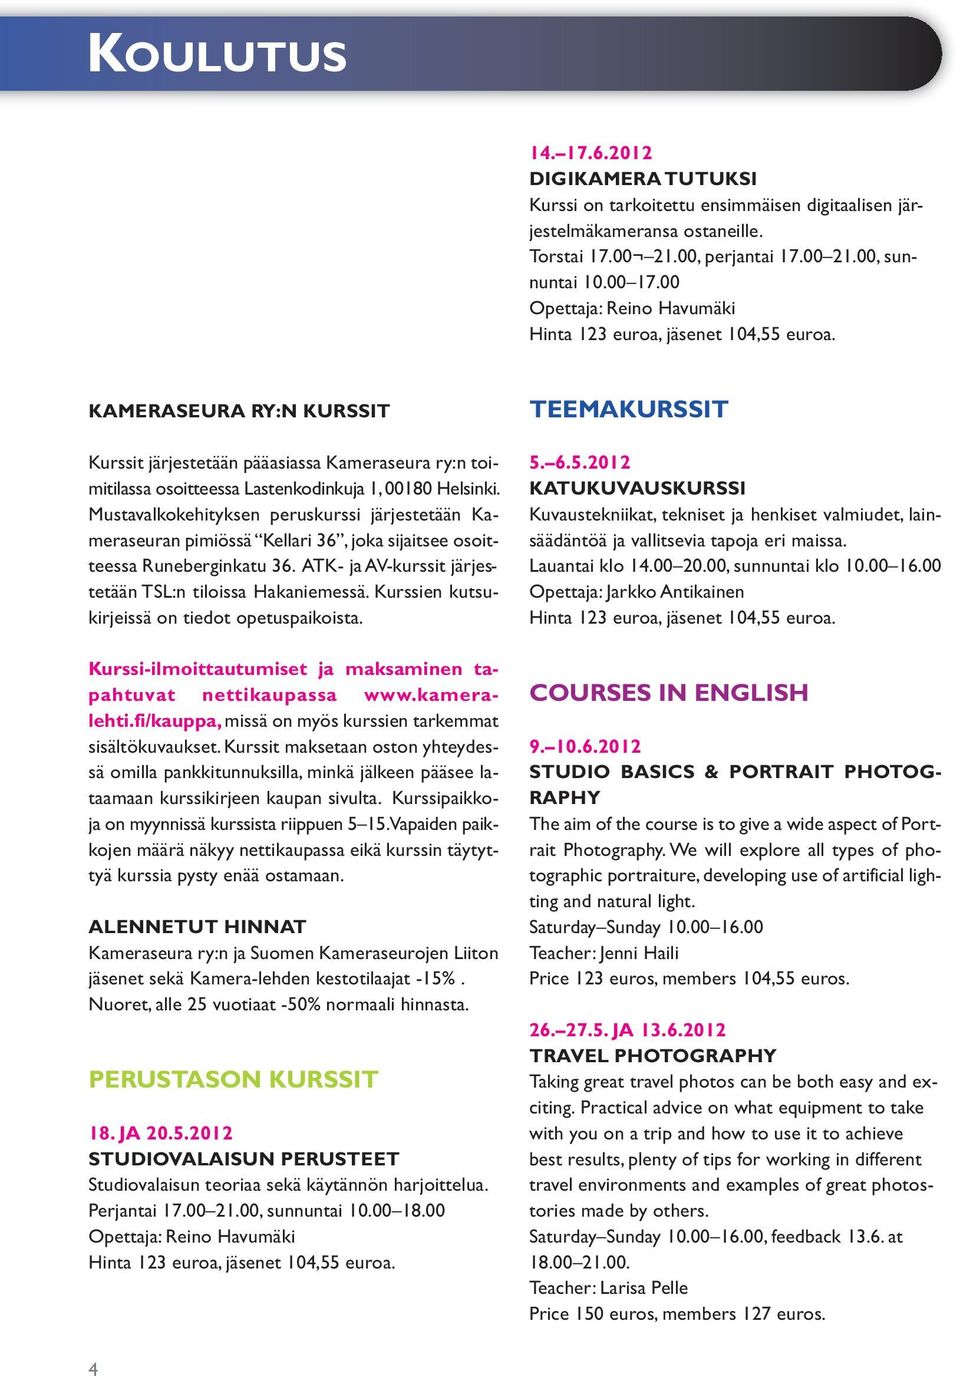 Mustavalkokehityksen peruskurssi järjestetään Kameraseuran pimiössä Kellari 36, joka sijaitsee osoitteessa Runeberginkatu 36. ATK- ja AV-kurssit järjestetään TSL:n tiloissa Hakaniemessä.